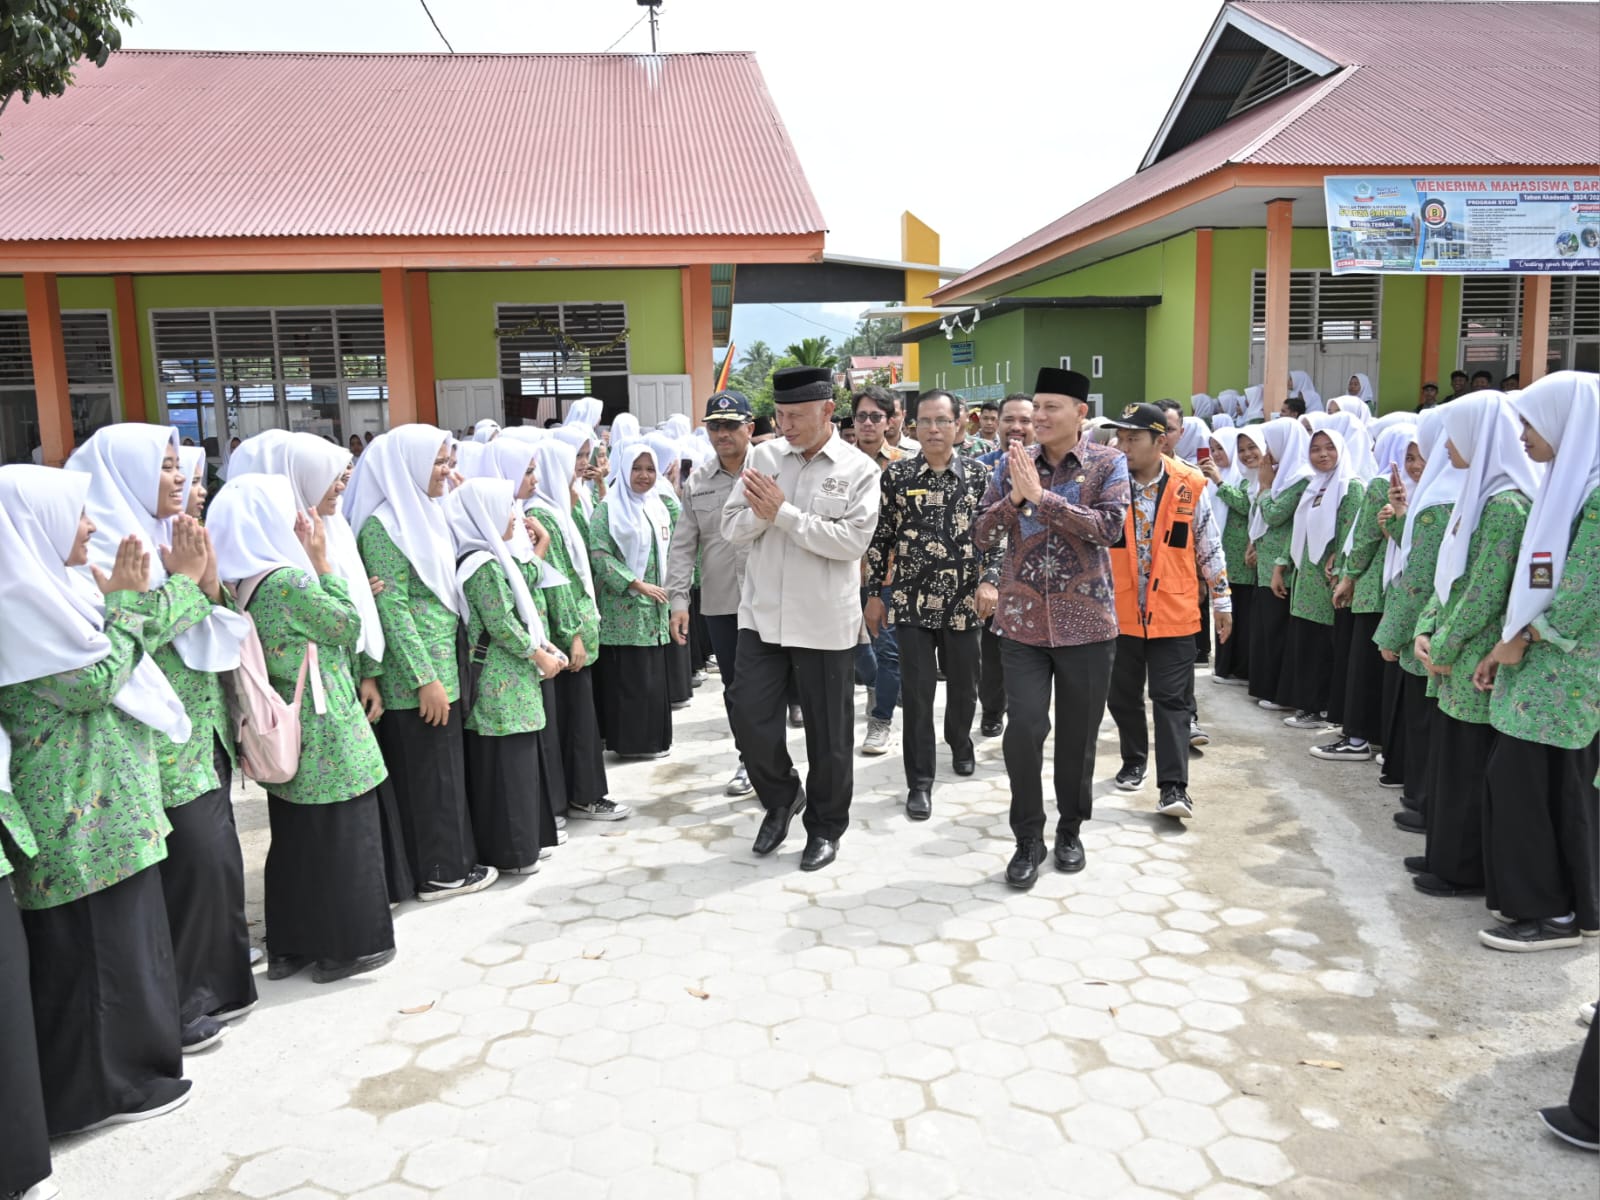 Gubernur Sumbar, Mahyeldi, disambut disejumlah Sekolah Menengah Atas dan Kejuruan (SMA-SMK) di Bumi Saiyo - Pasaman. Foto Adpsb. 